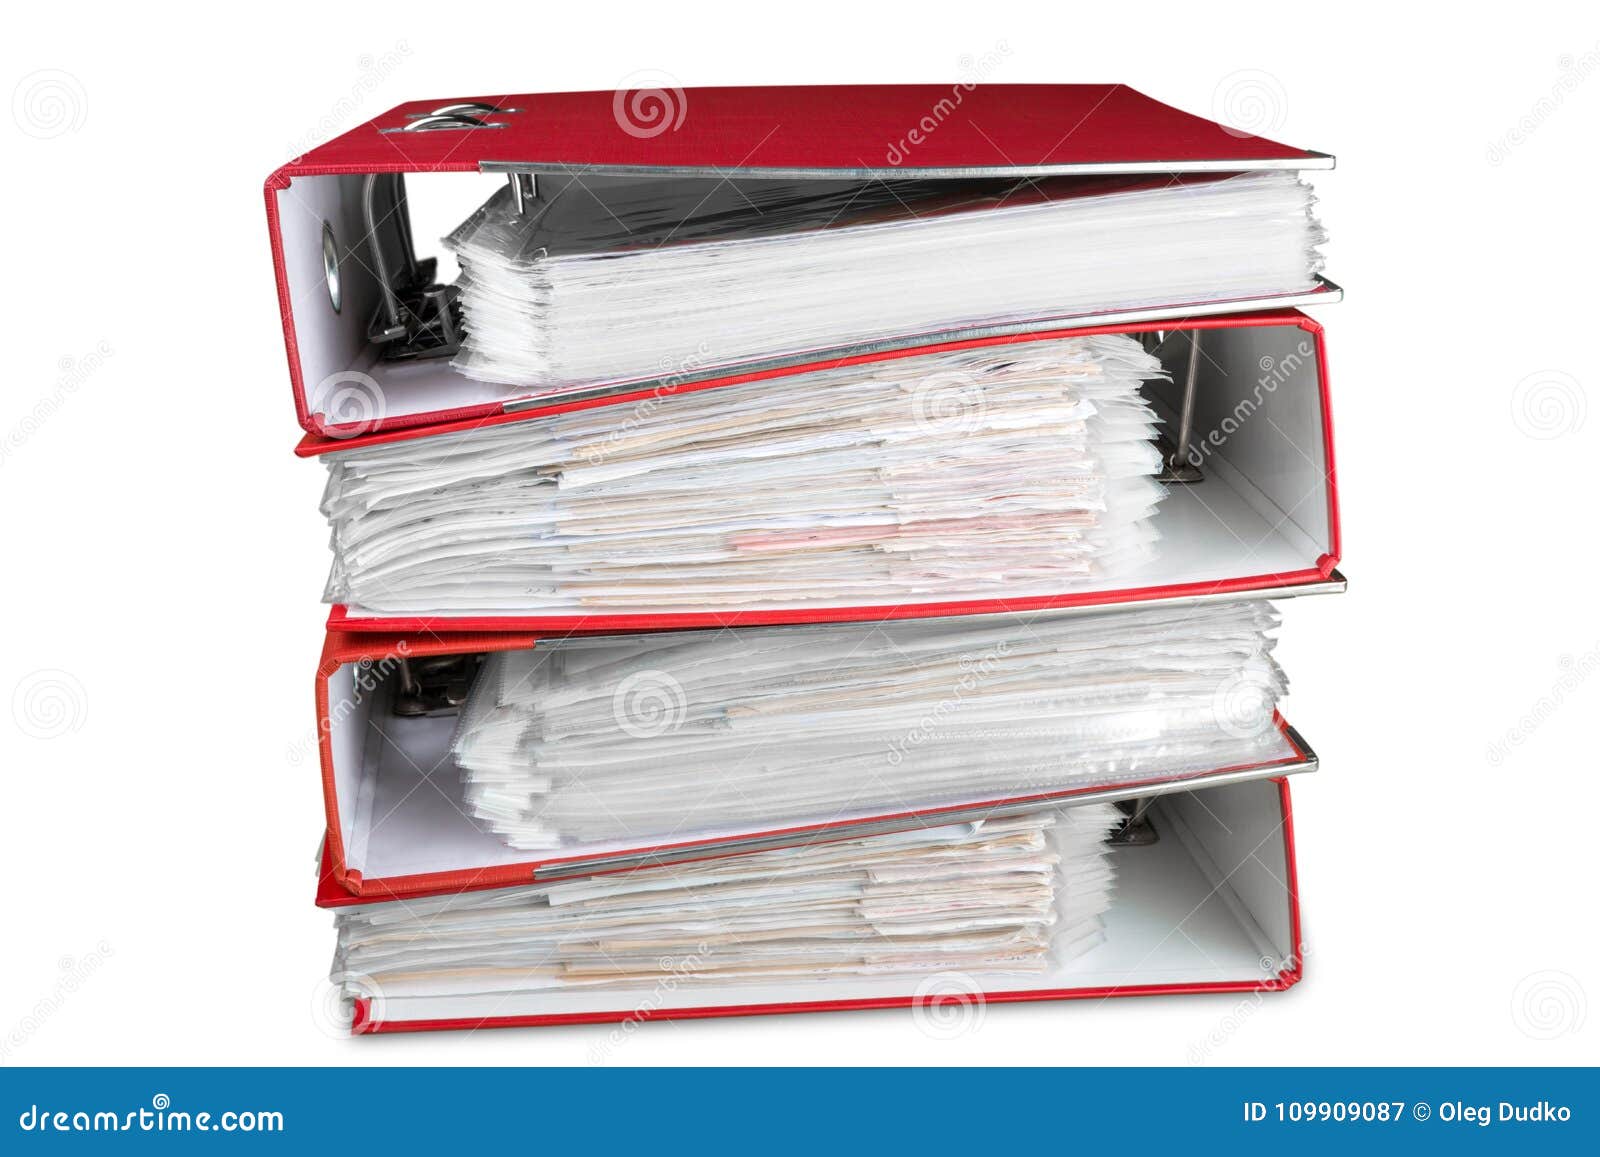 Collection 1 file. Папка для документов. Папка стоячая. Стопка папок с документами. Папка для бумаг презентационная.